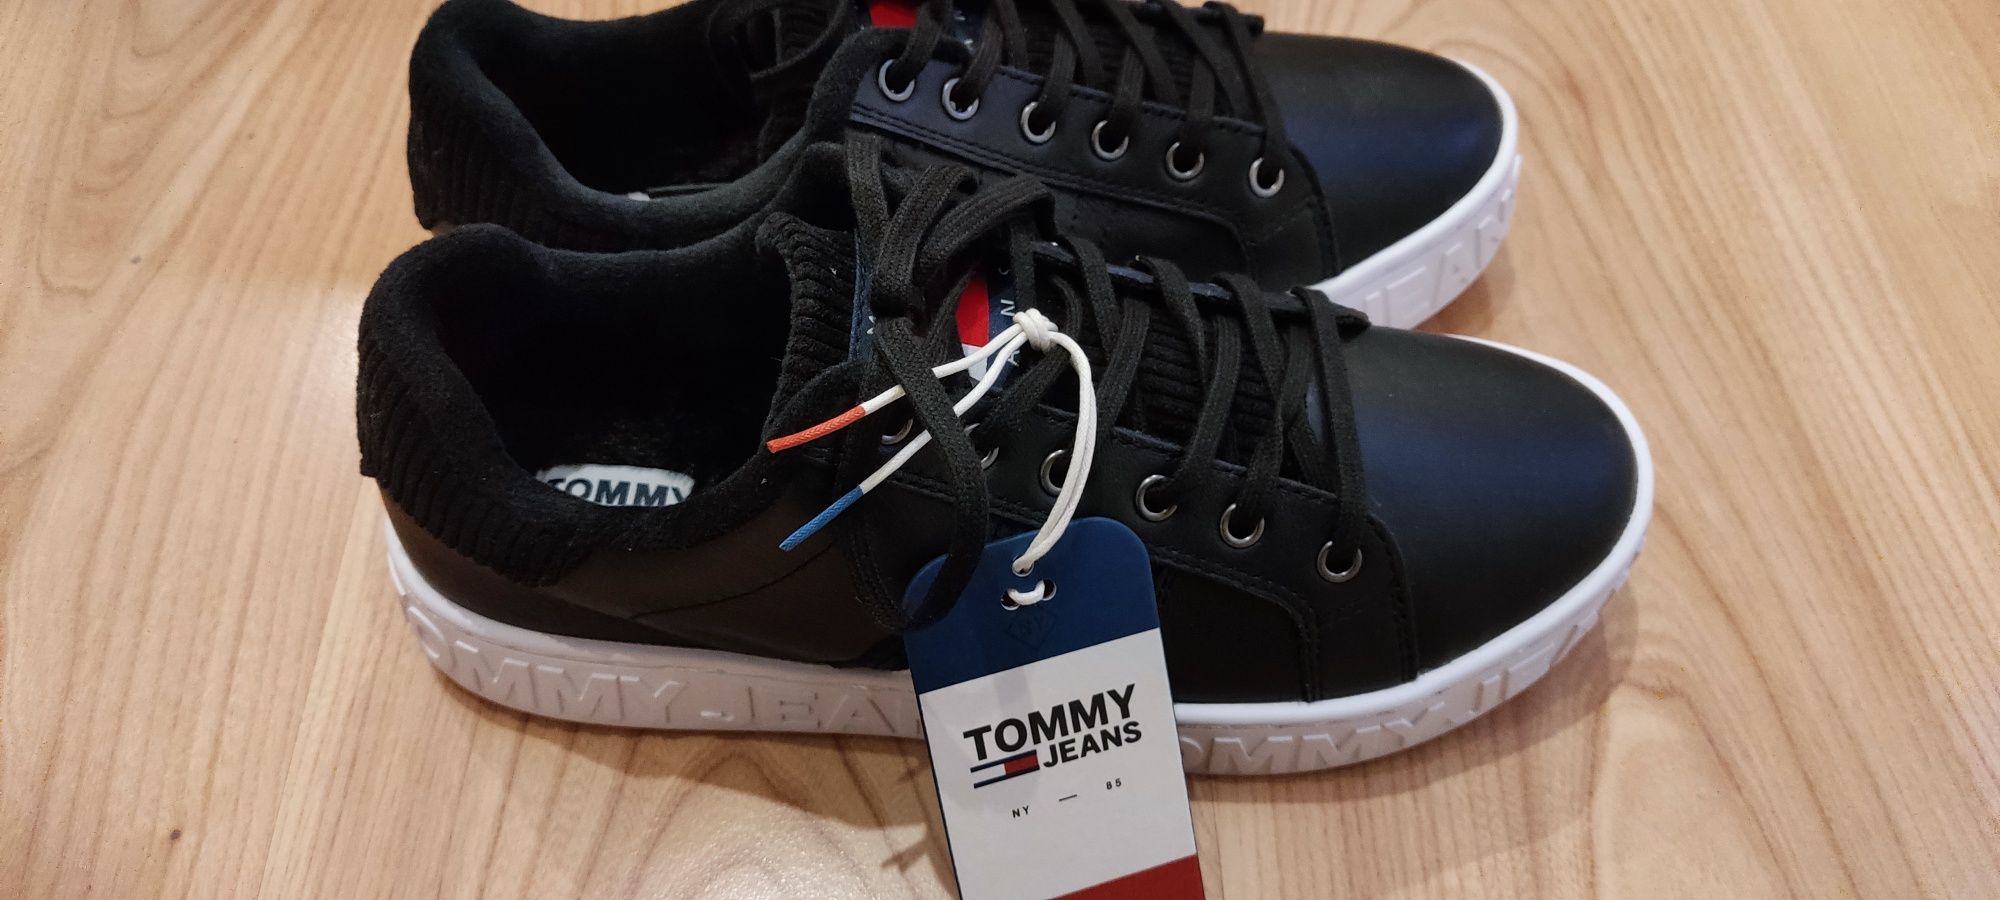 Buty Tommy Jeans Hilfiger nowe r. 38 sneakersy